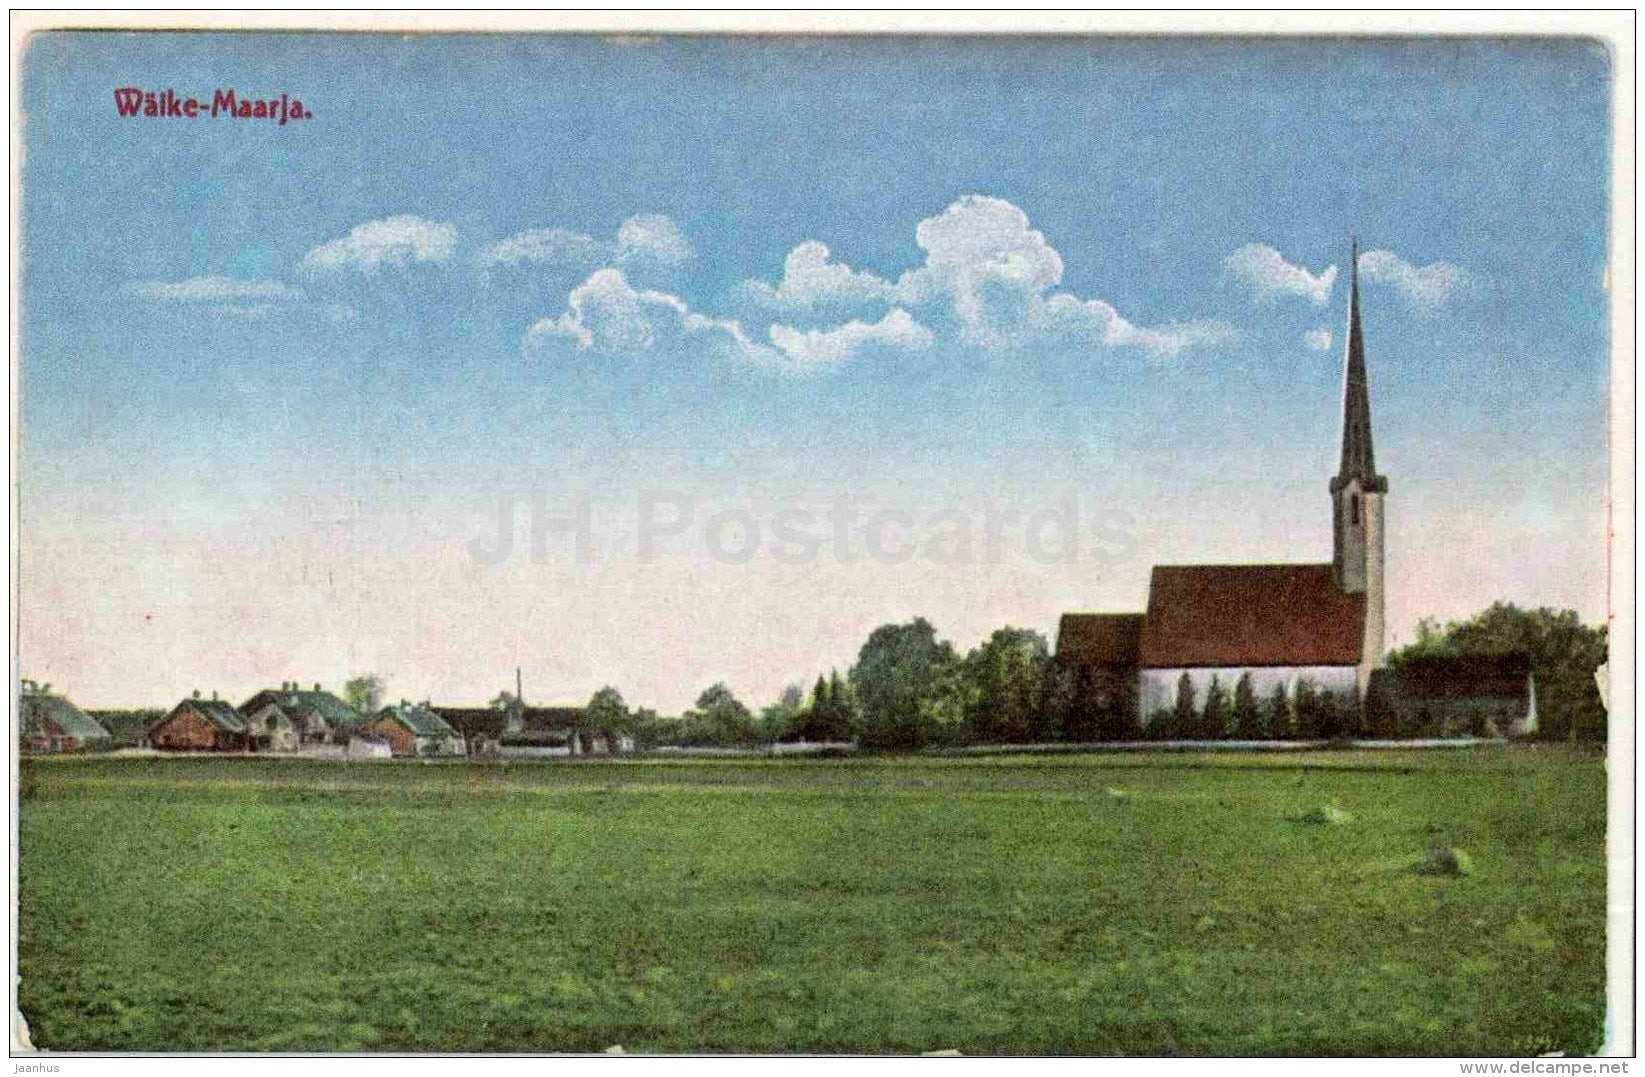 Church of Väike-Maarja - Virumaa - OLD POSTCARD REPRODUCTION! - 1990 - Estonia USSR - unused - JH Postcards